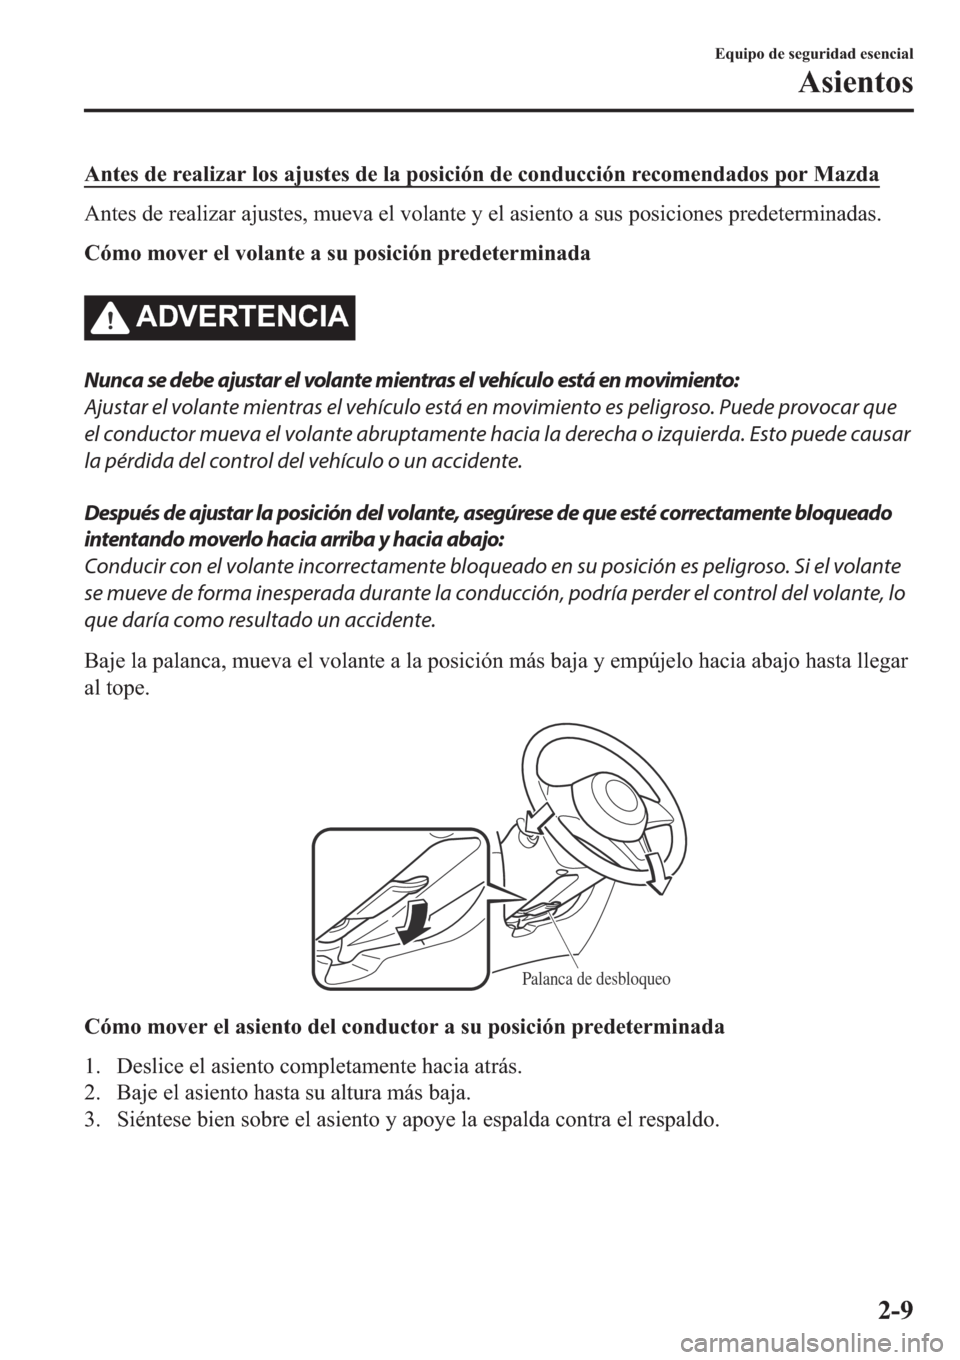 MAZDA MODEL 6 2019  Manual del propietario (in Spanish) �$�Q�W�H�V��G�H��U�H�D�O�L�]�D�U��O�R�V��D�M�X�V�W�H�V��G�H��O�D��S�R�V�L�F�L�y�Q��G�H��F�R�Q�G�X�F�F�L�y�Q��U�H�F�R�P�H�Q�G�D�G�R�V��S�R�U��0�D�]�G�D
�$�Q�W�H�V��G�H��U�H�D�O�L�]�D�U��